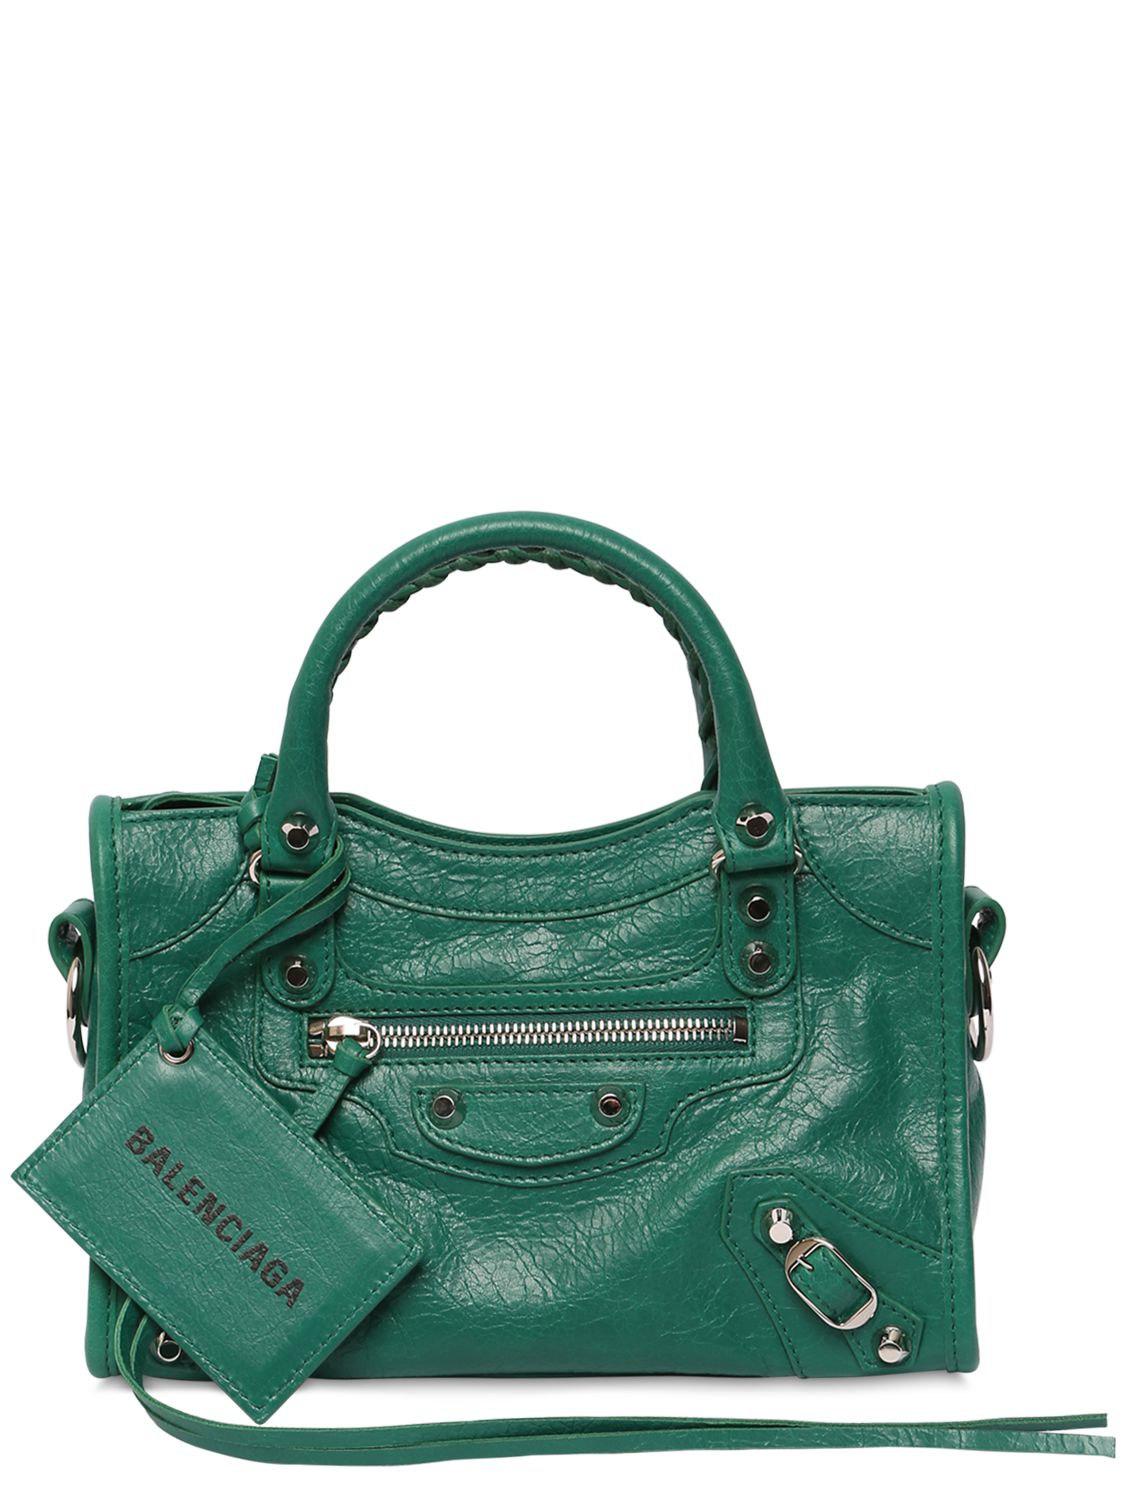 新着商品 bag leather Balenciaga - クラッチバッグ